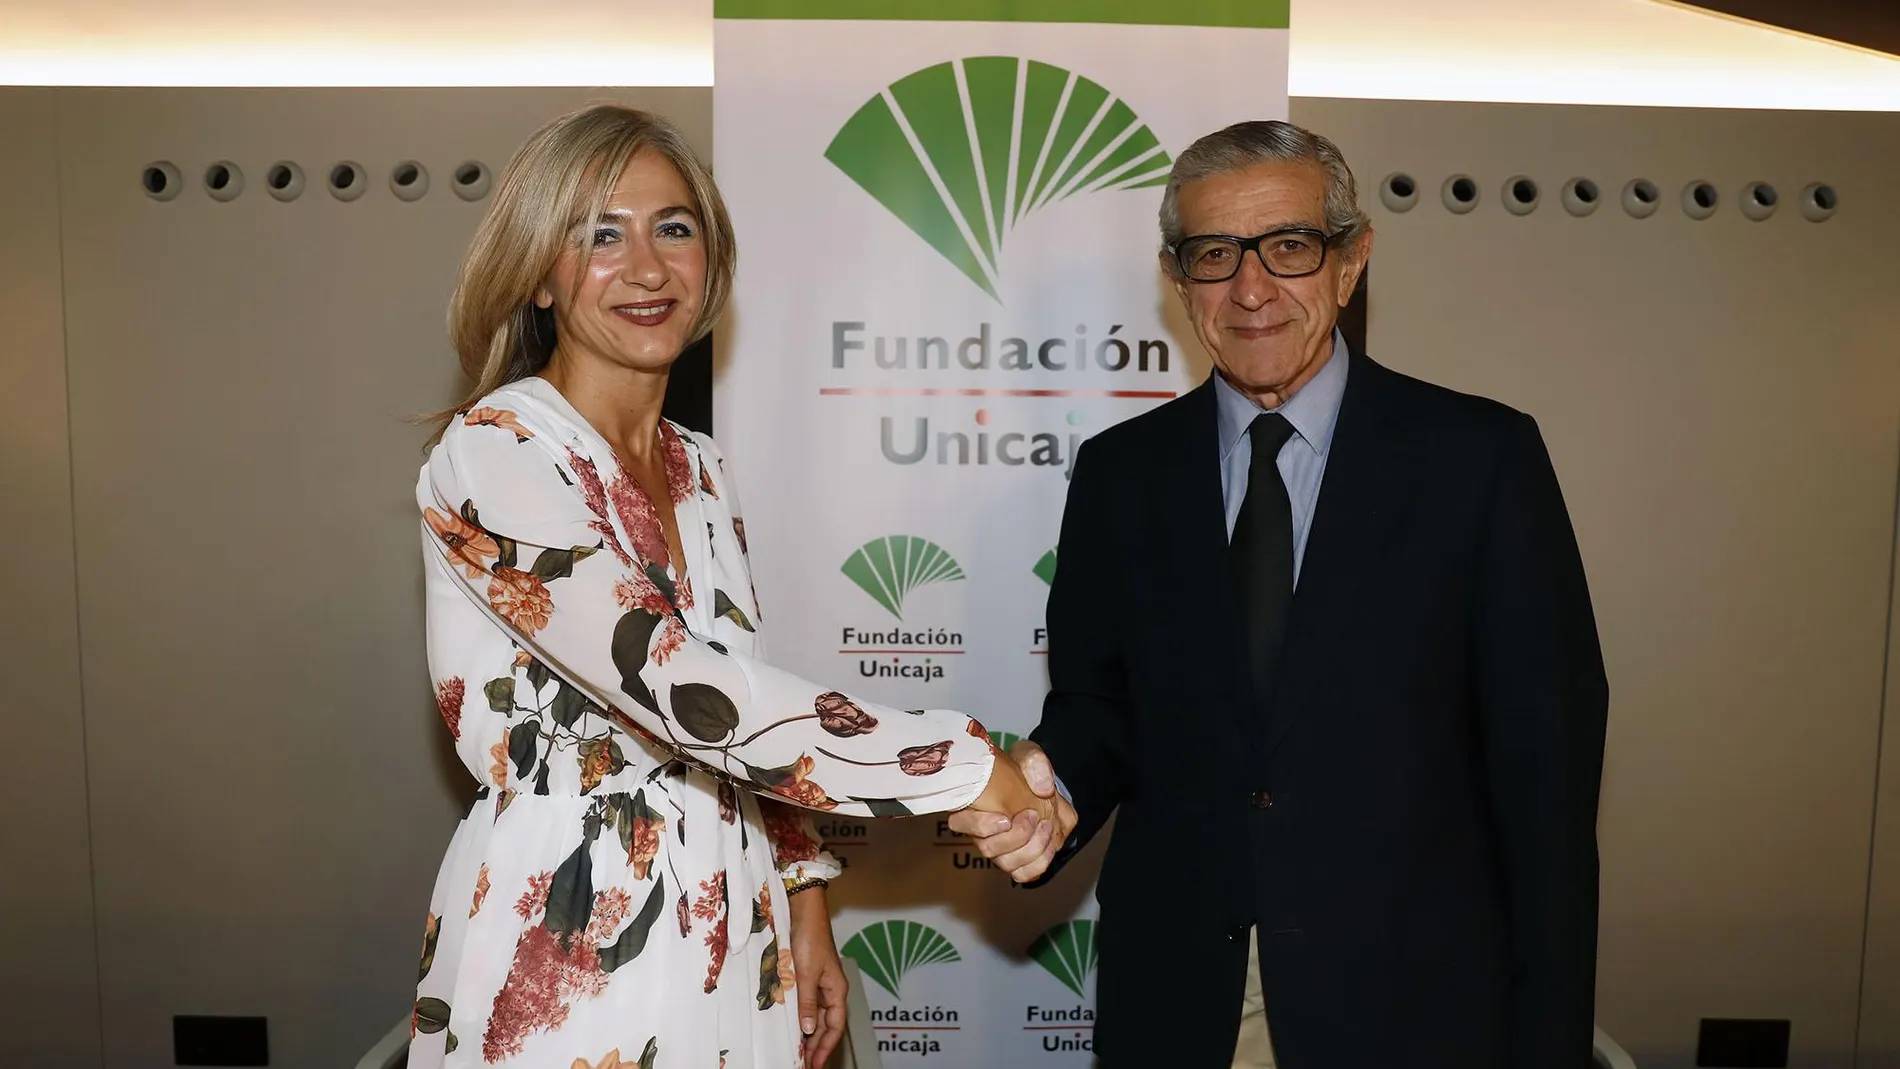 La consejera de Cultura y Patrimonio Histórico, Patricia del Pozo, y el presidente de la Fundación Unicaja, Braulio Medel / La Razón